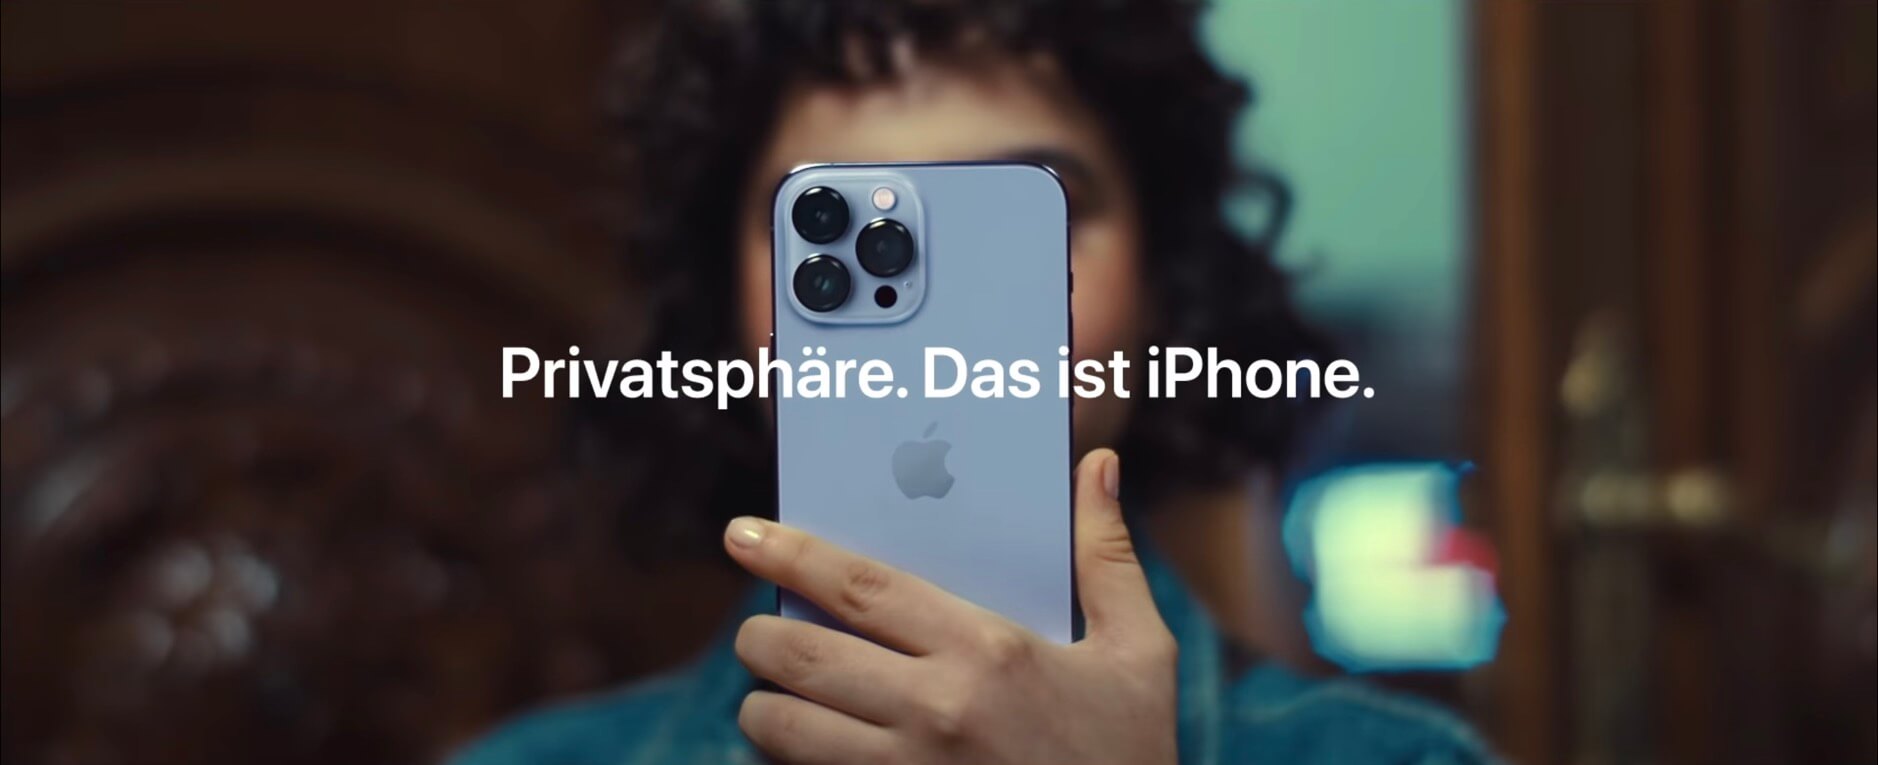 Screenshot aus einer Apple Werbung für Privatsphäre.